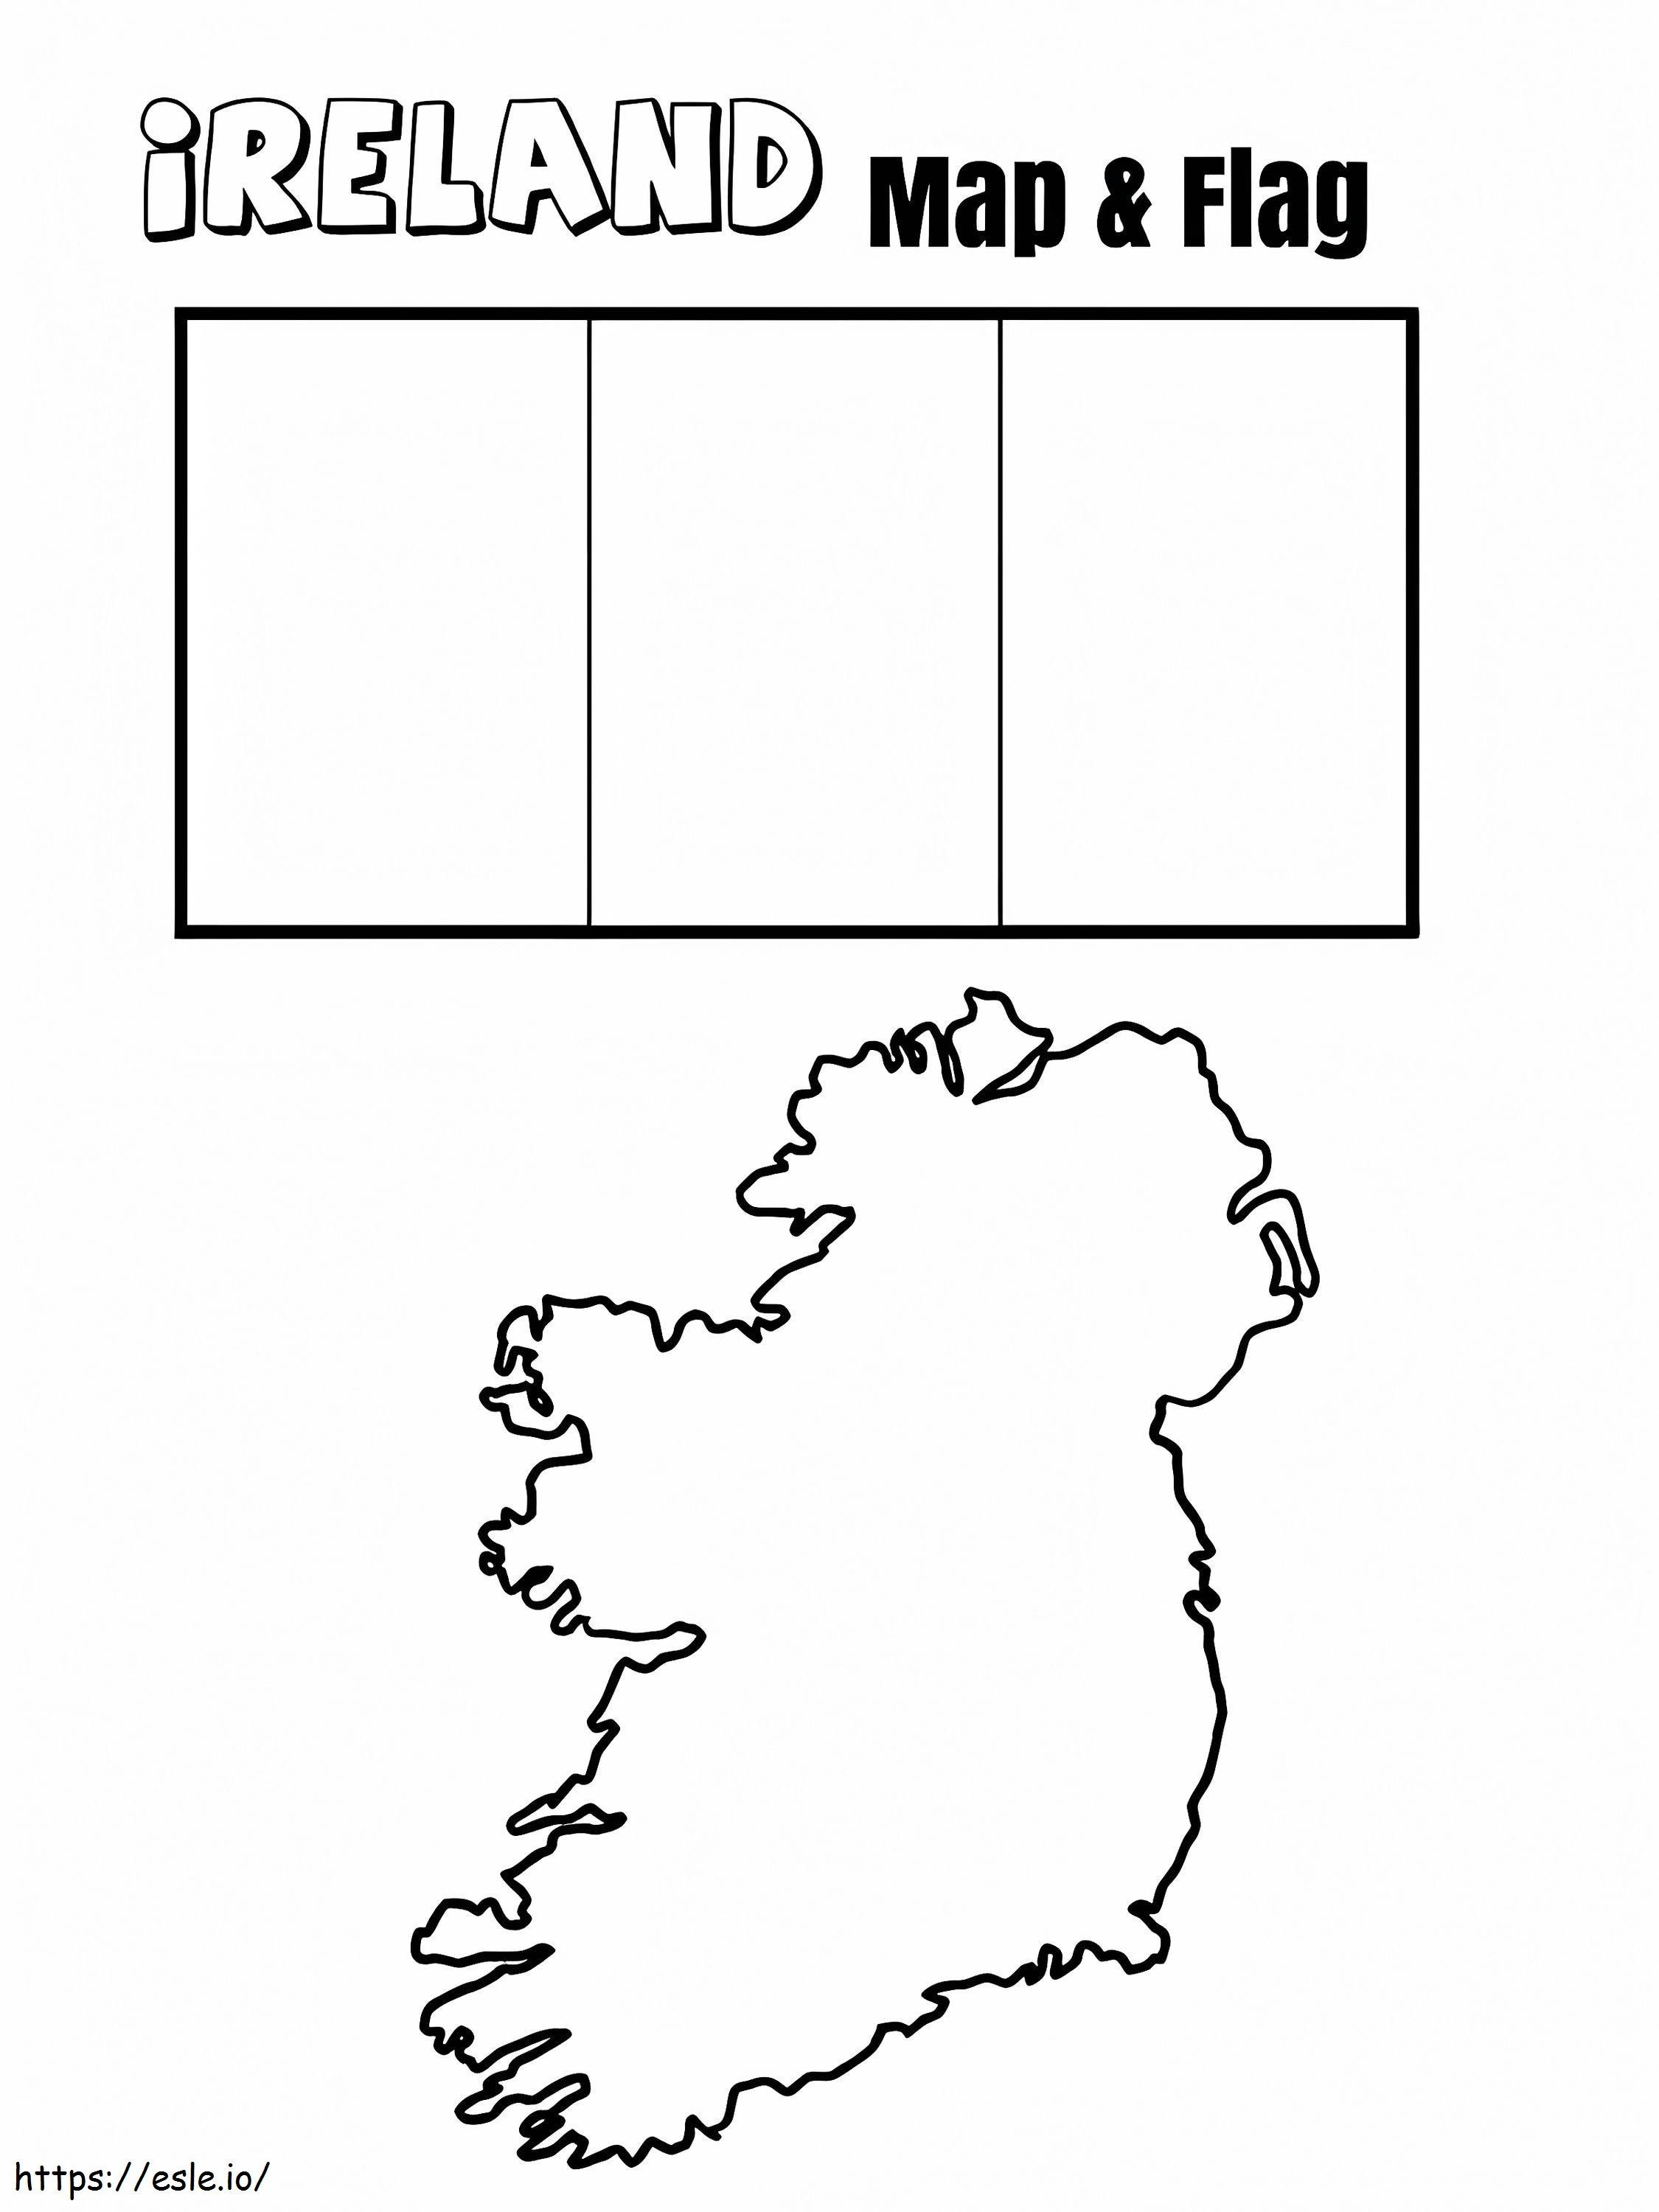 Irlandia Flaga I Mapa kolorowanka